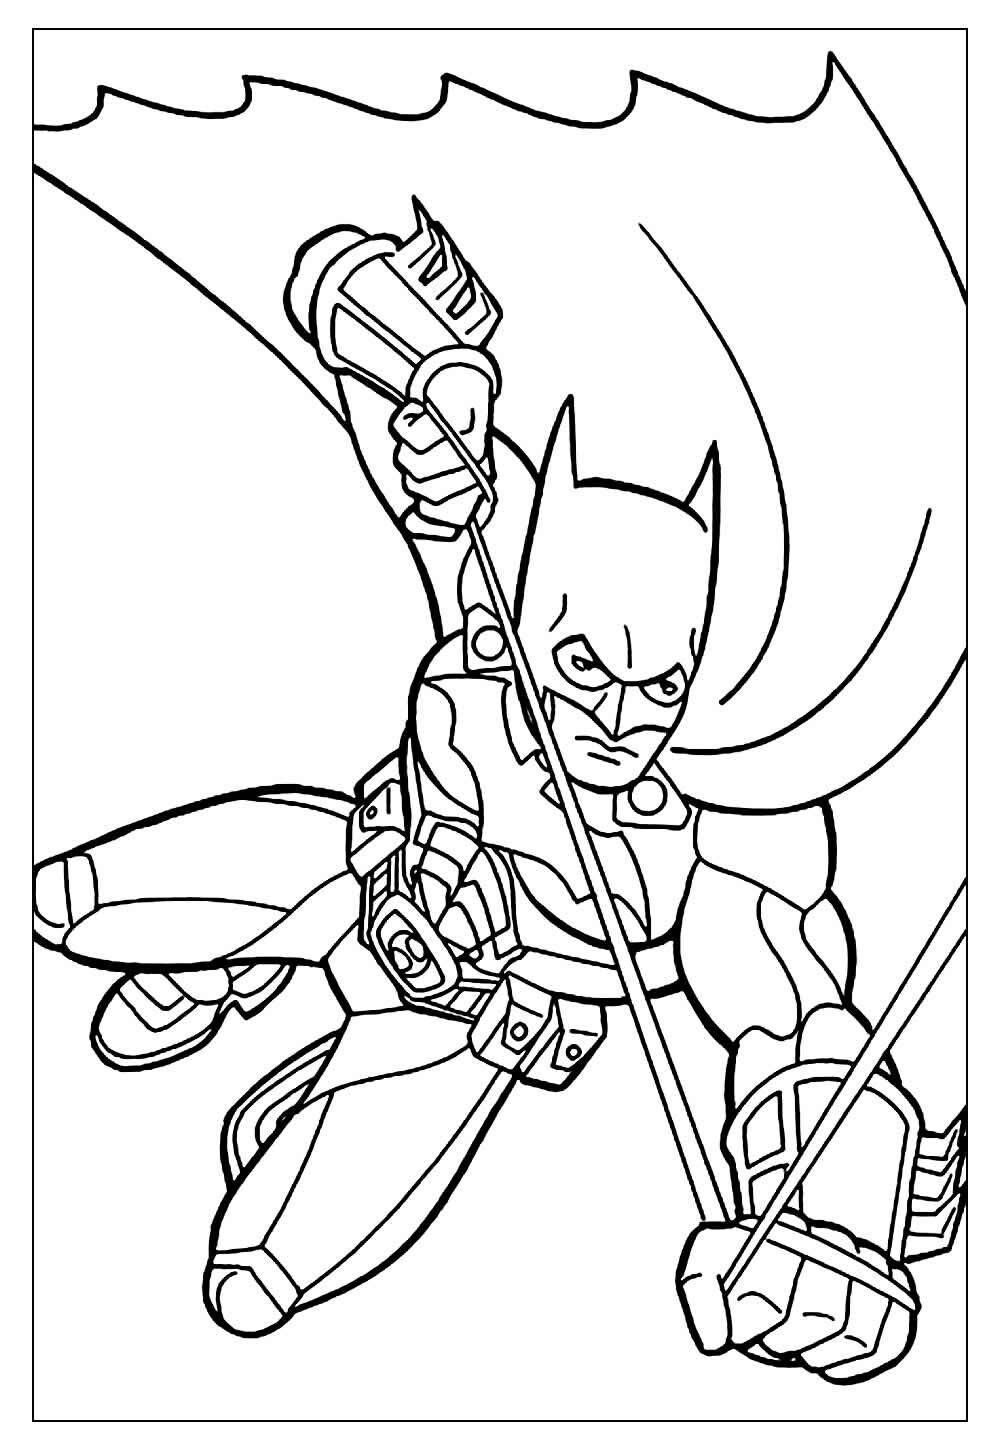 Imagem do Batman para pintar e colorir